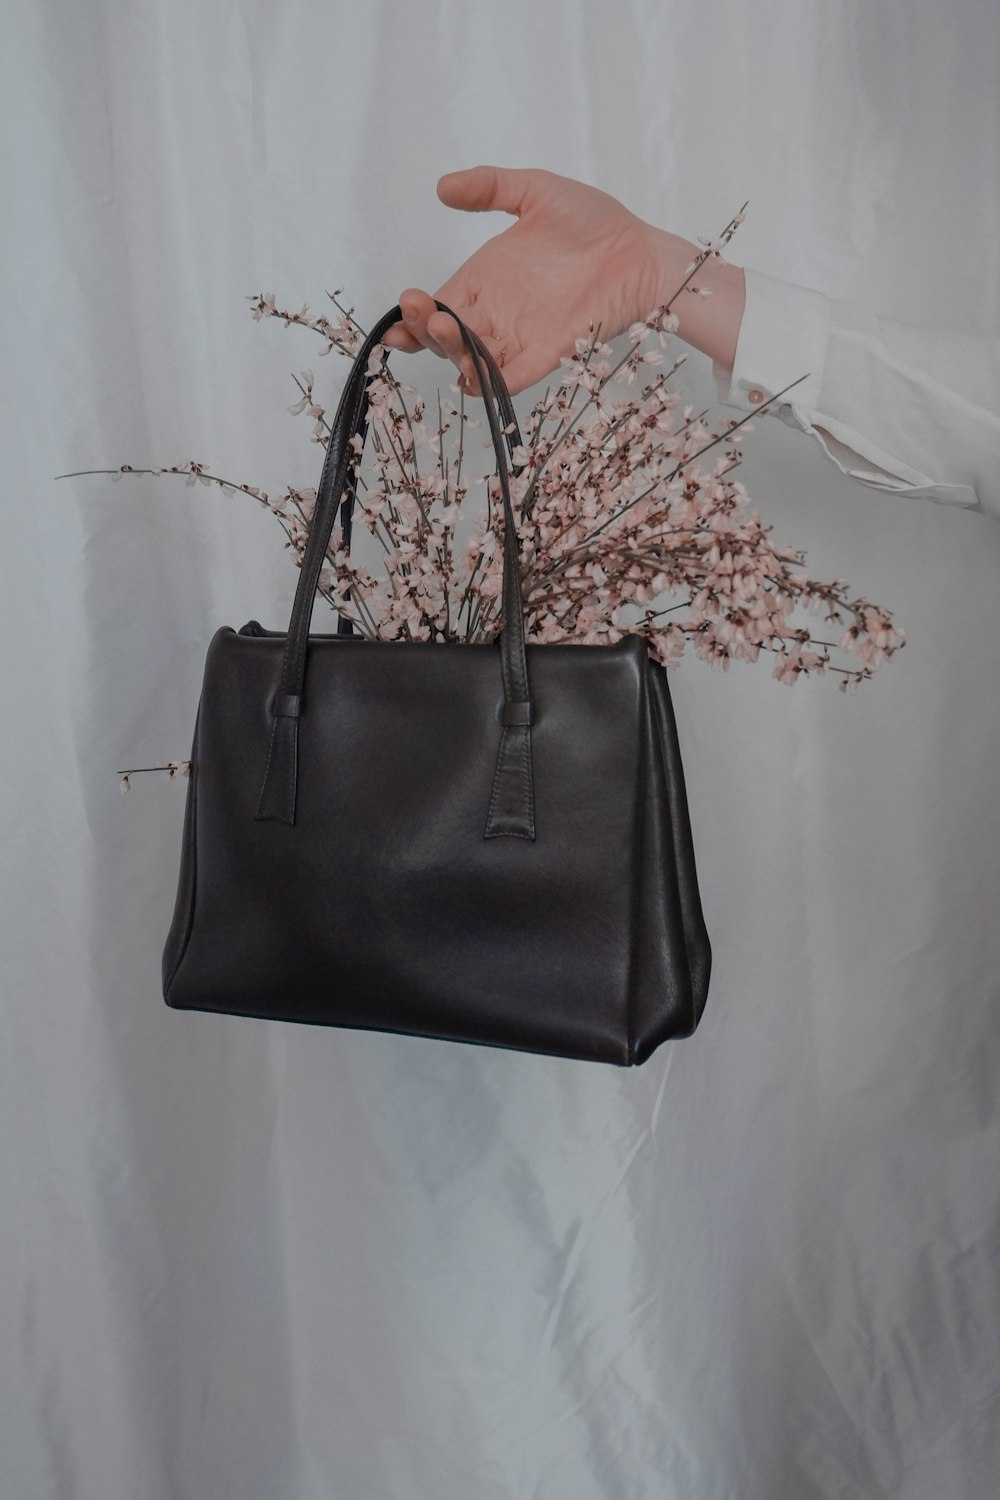 flowers in brown leather handbag